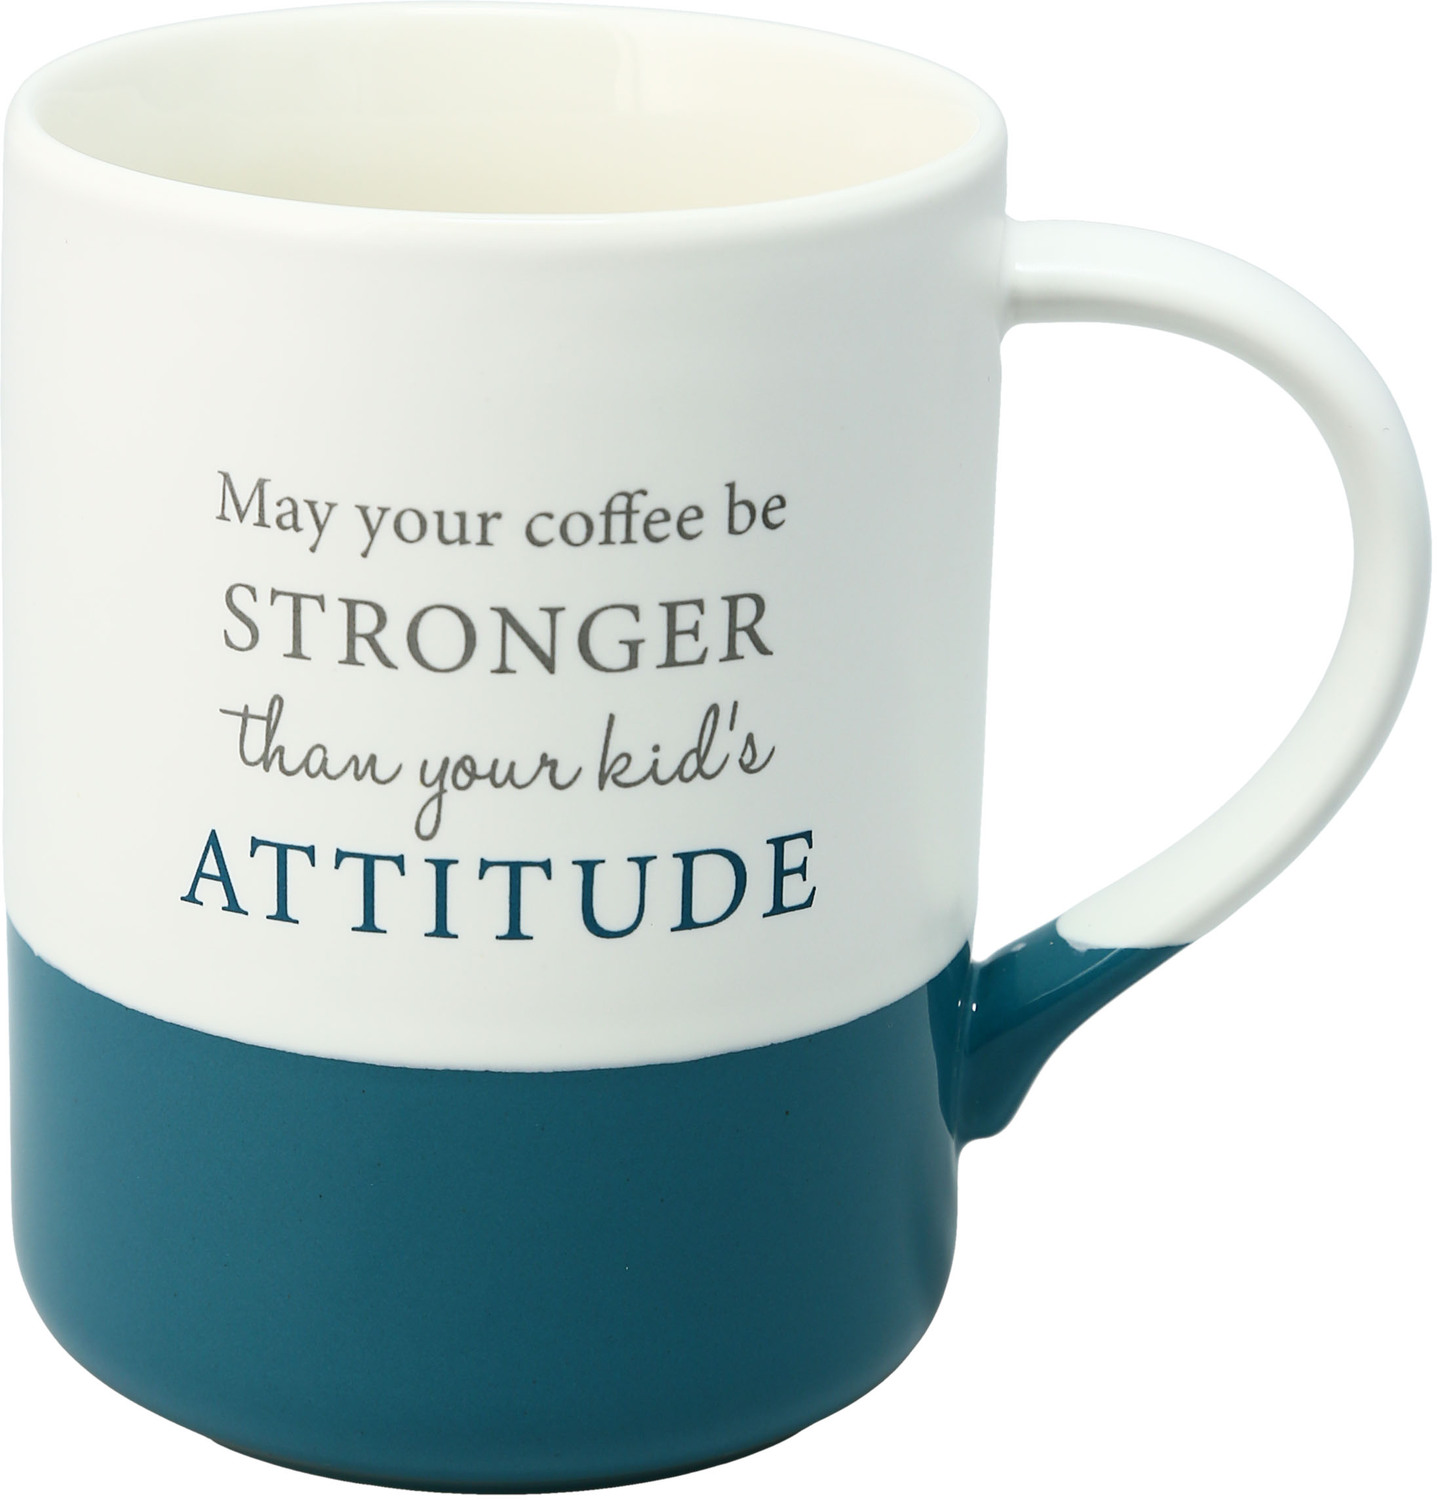 Attitude by A-Parent-ly - Attitude - 18 oz Mug